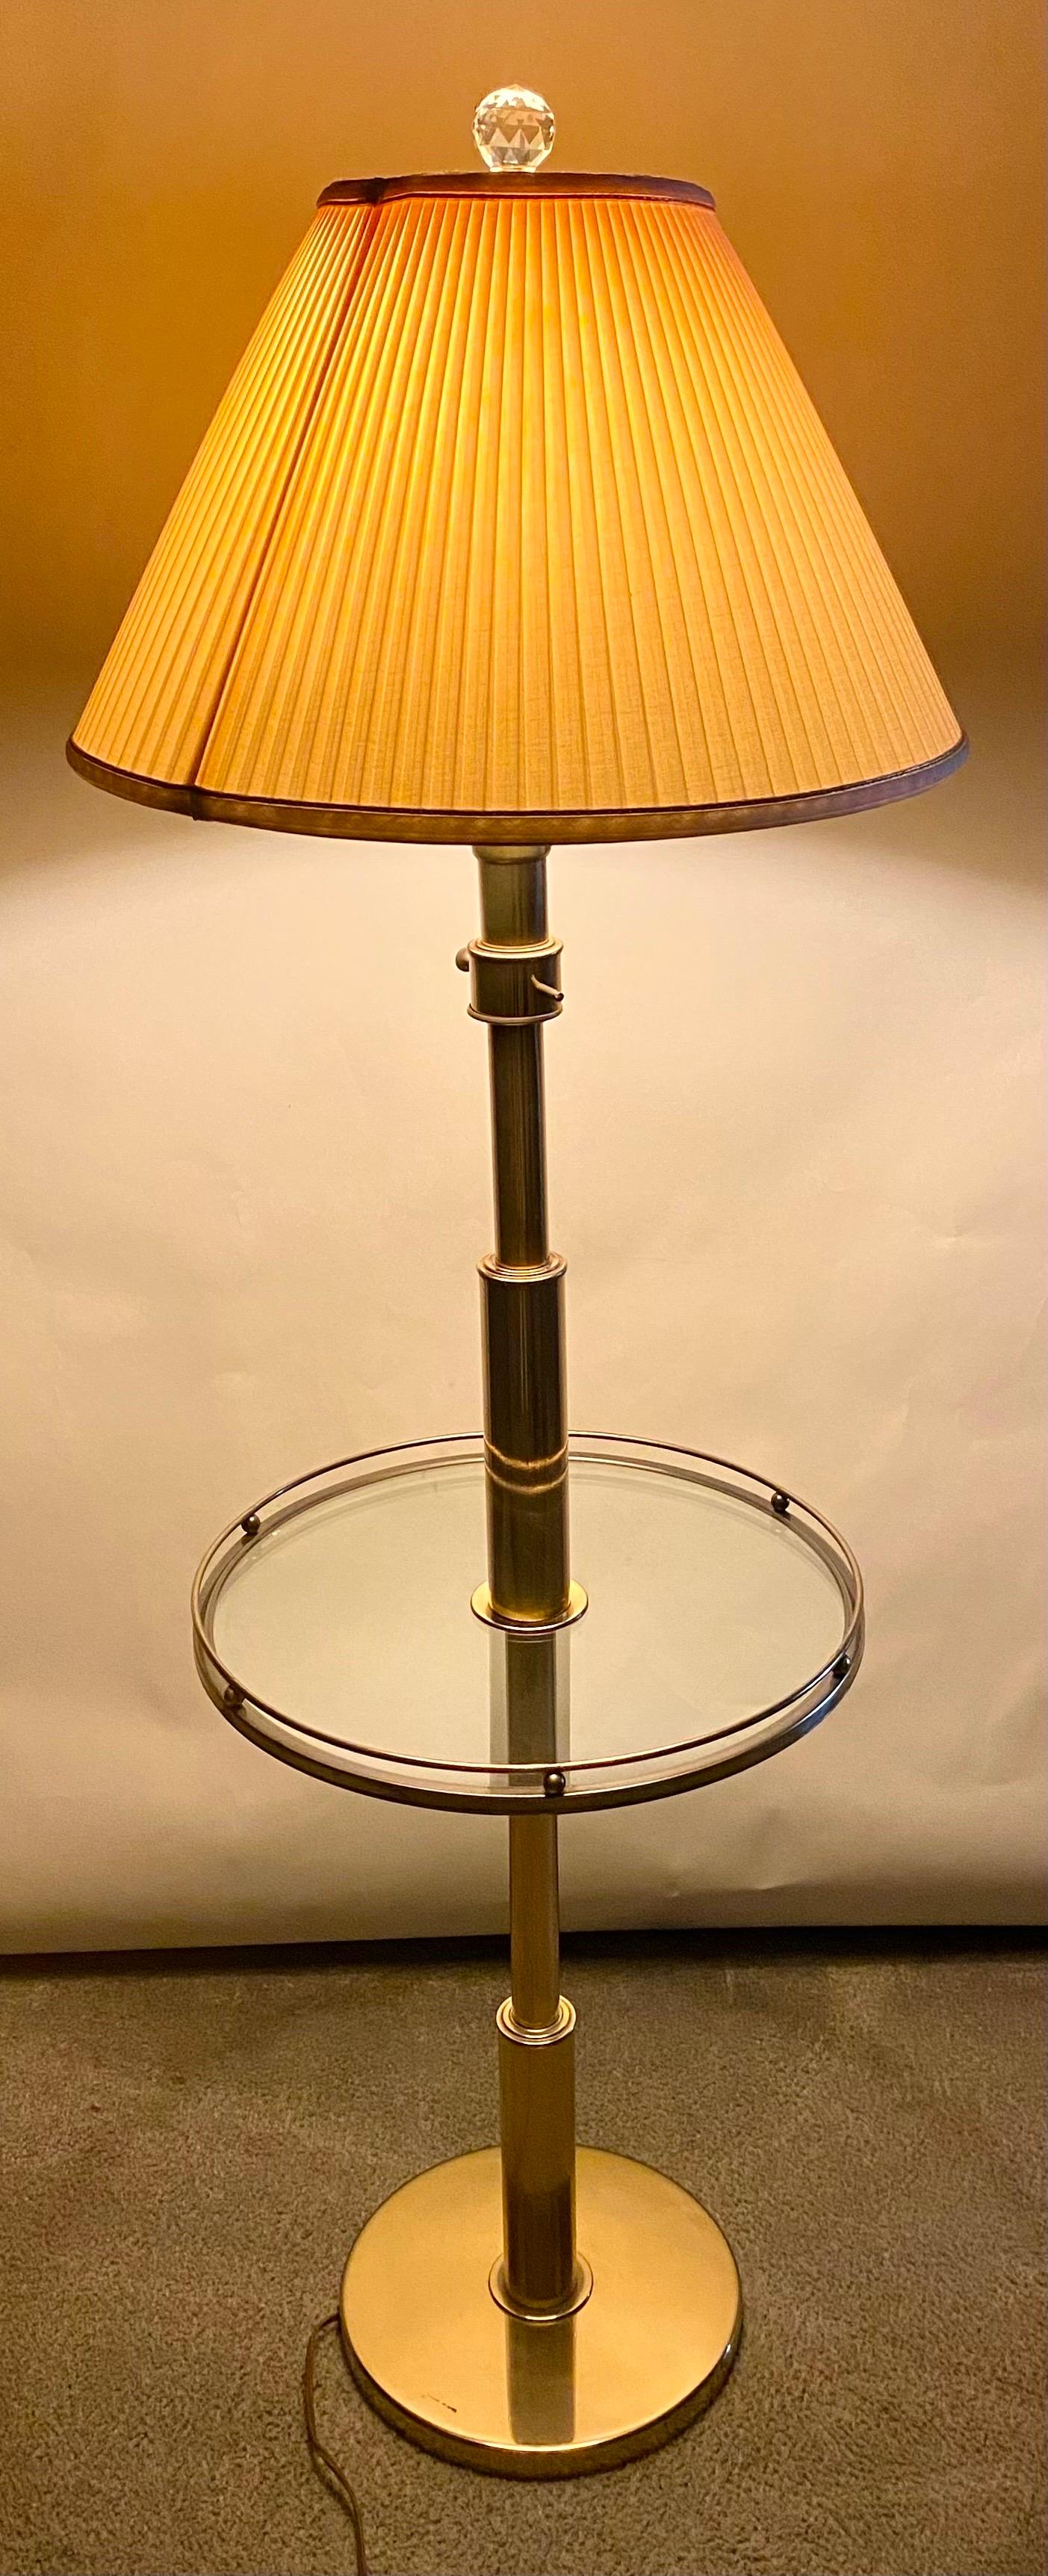 Une lampe de table classique et élégante de style moderne du milieu du siècle. La lampe de table est finement fabriquée en laiton. La table est dotée d'une base ronde en laiton et d'un plateau en verre. Elle est joliment encadrée de laiton dans un